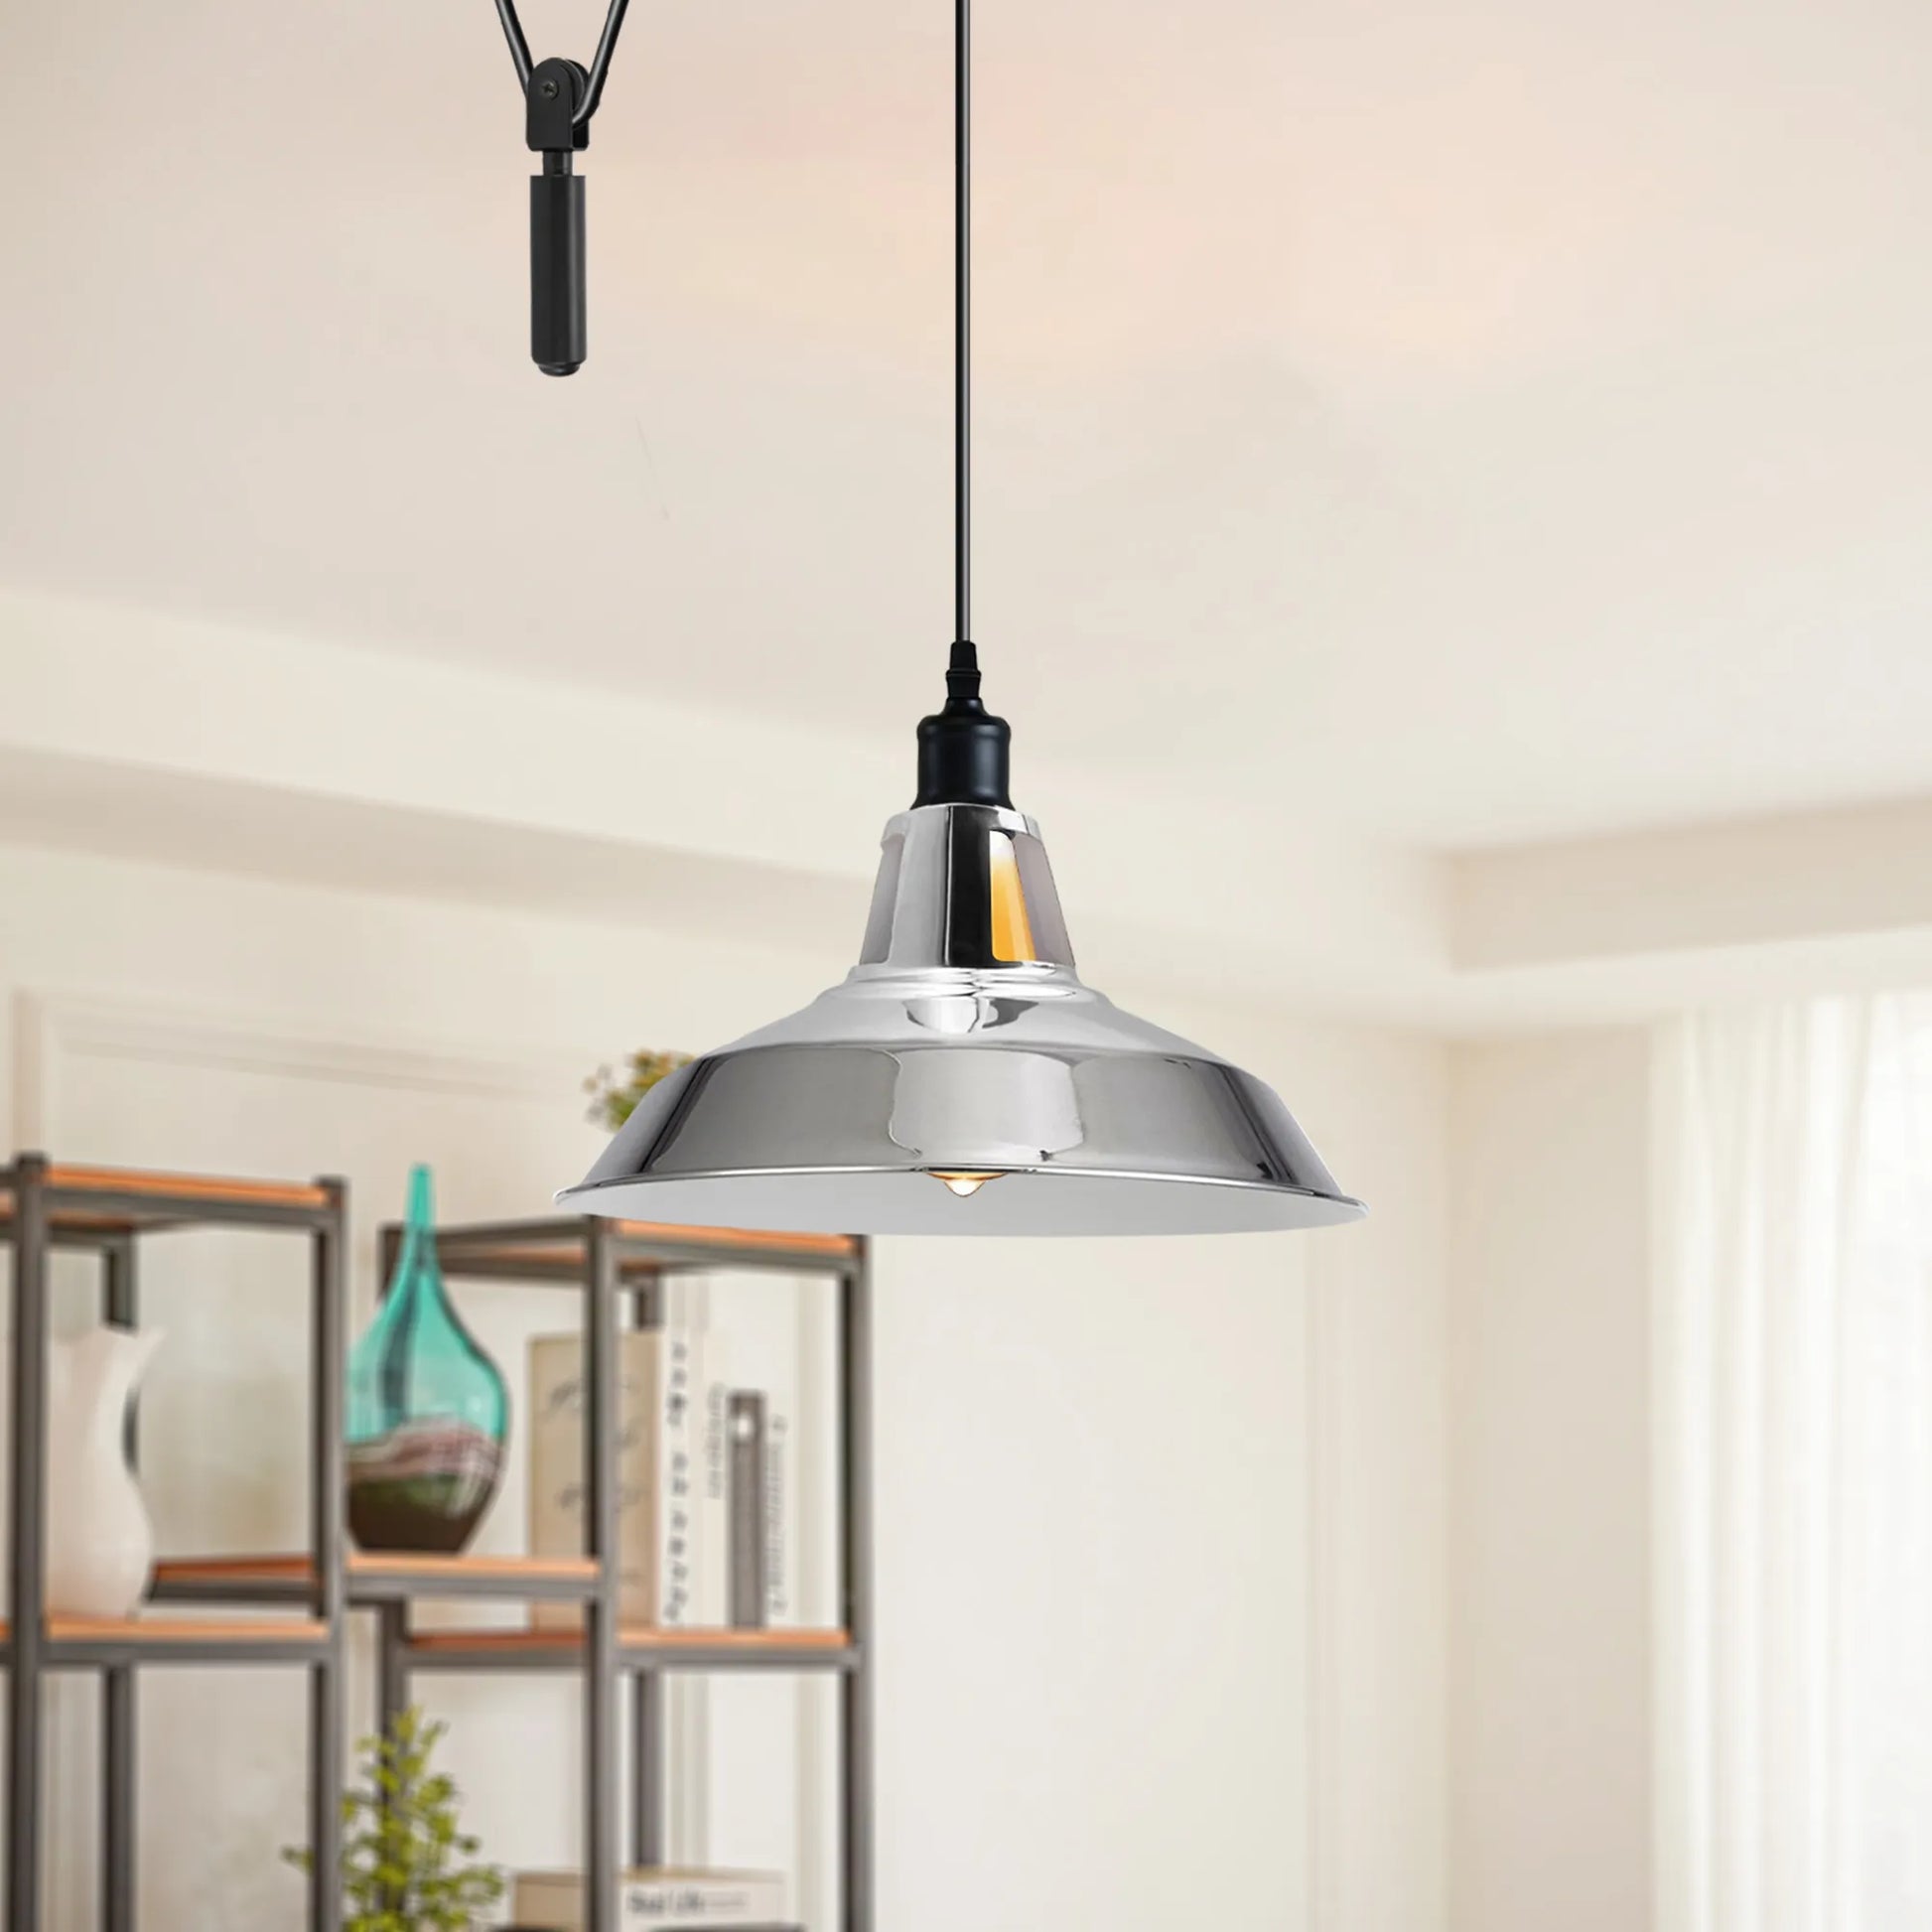 Adjustable Single Head Chrome Hanging Pendant Light for living room.JPG